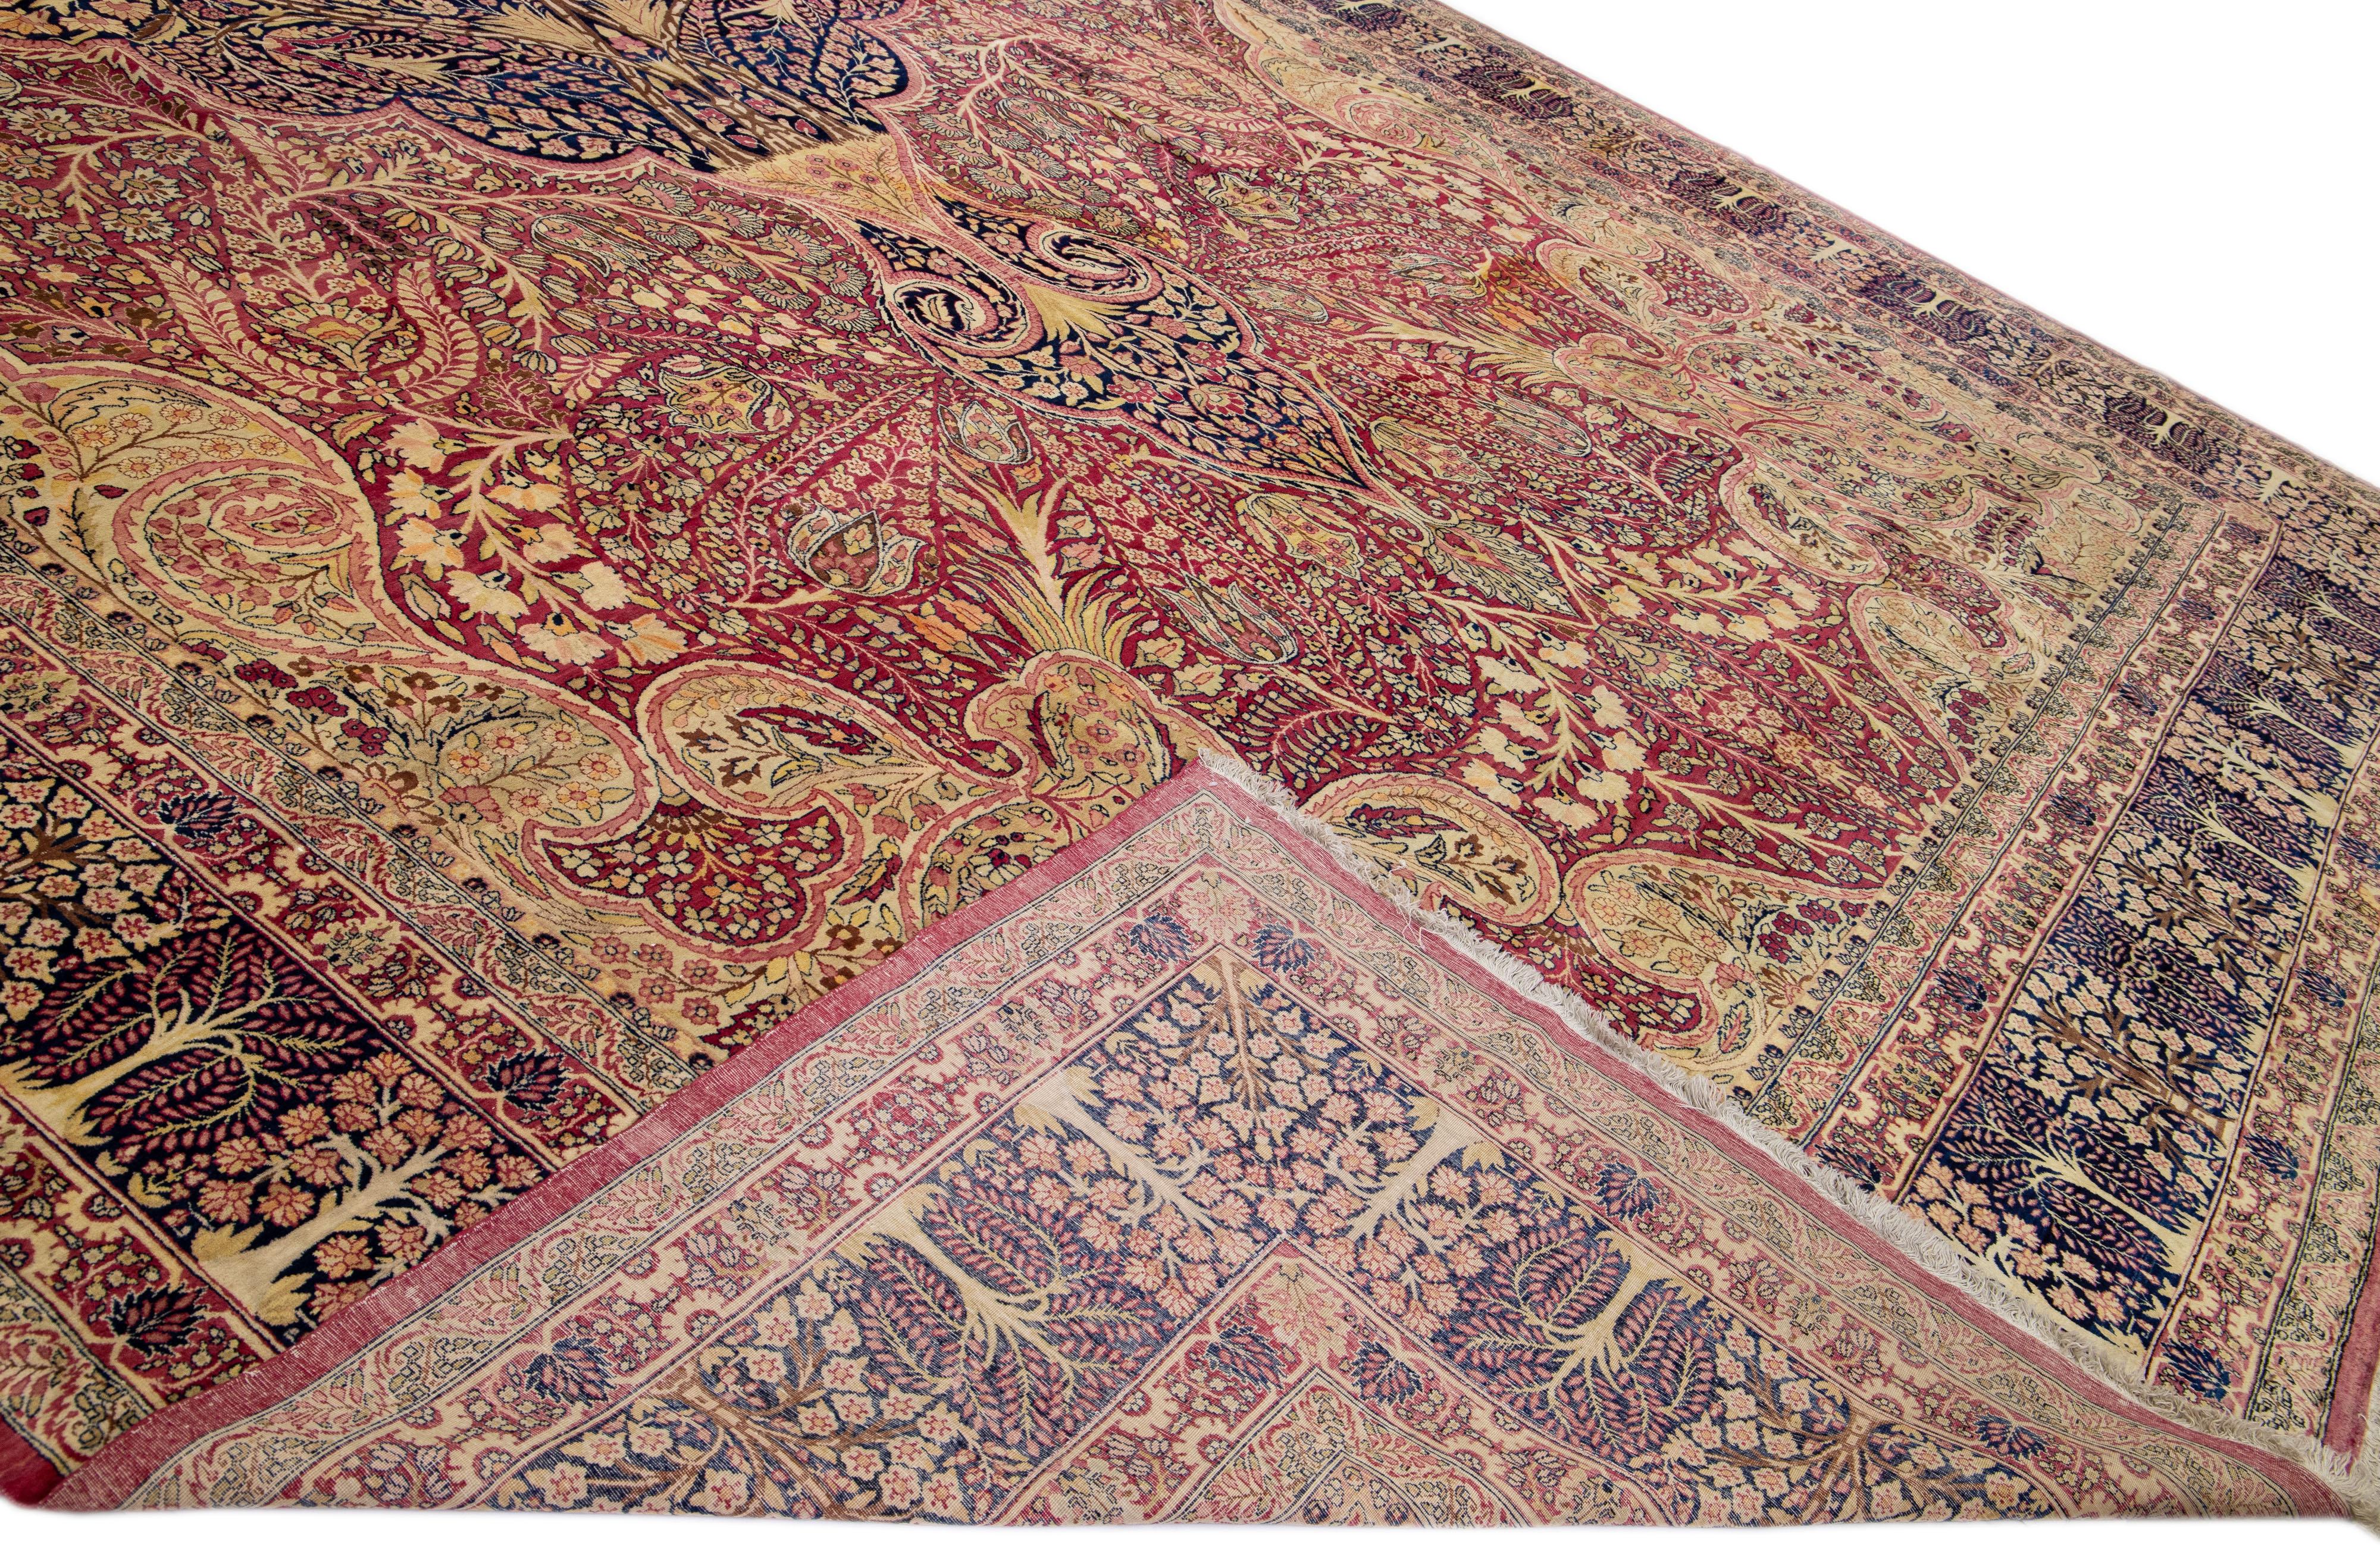 Magnifique tapis antique Kerman en laine nouée à la main avec un champ beige et rose. Ce tapis persan a un cadre bleu et des accents multicolores dans un magnifique motif de rosettes.

Ce tapis mesure : 14'11